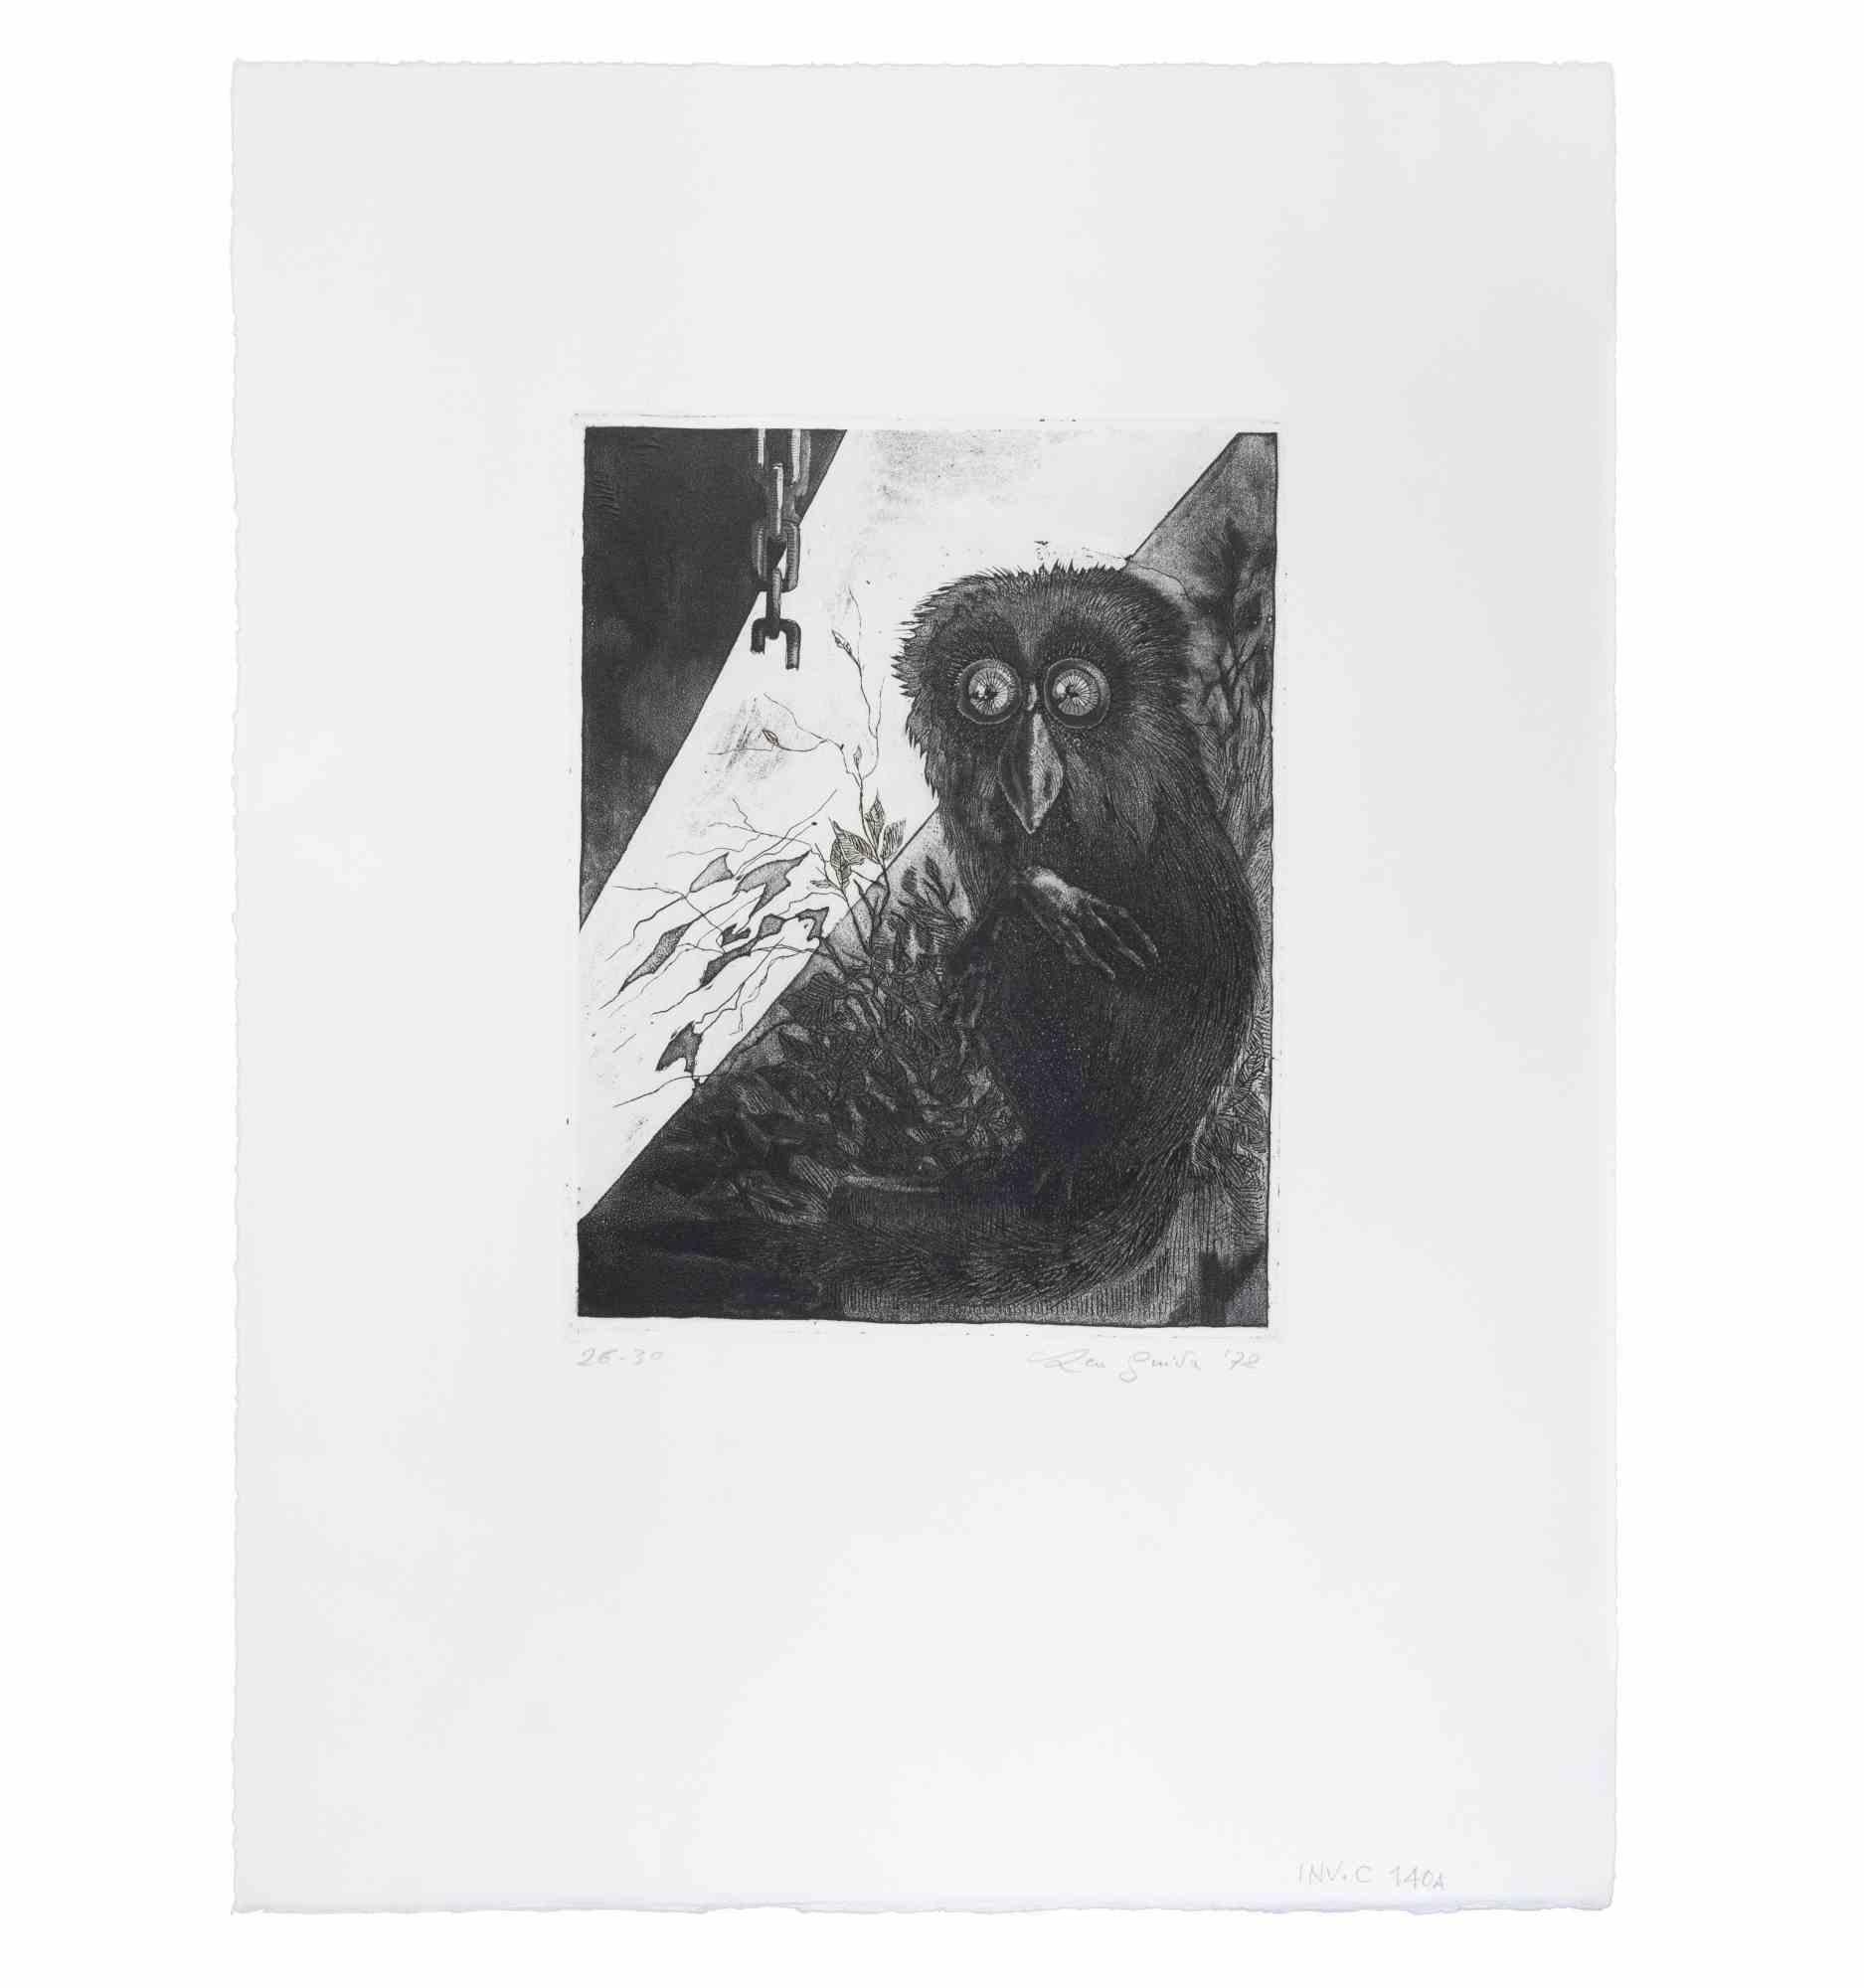 Lamur ist ein Kunstwerk, das 1972 von dem italienischen zeitgenössischen Künstler  Leo Guida  (1992 - 2017).

Original-Radierung auf Karton. 

Handsigniert und datiert am unteren rechten Rand und nummeriert, Auflage 26/30, in der linken Ecke. 

Gute